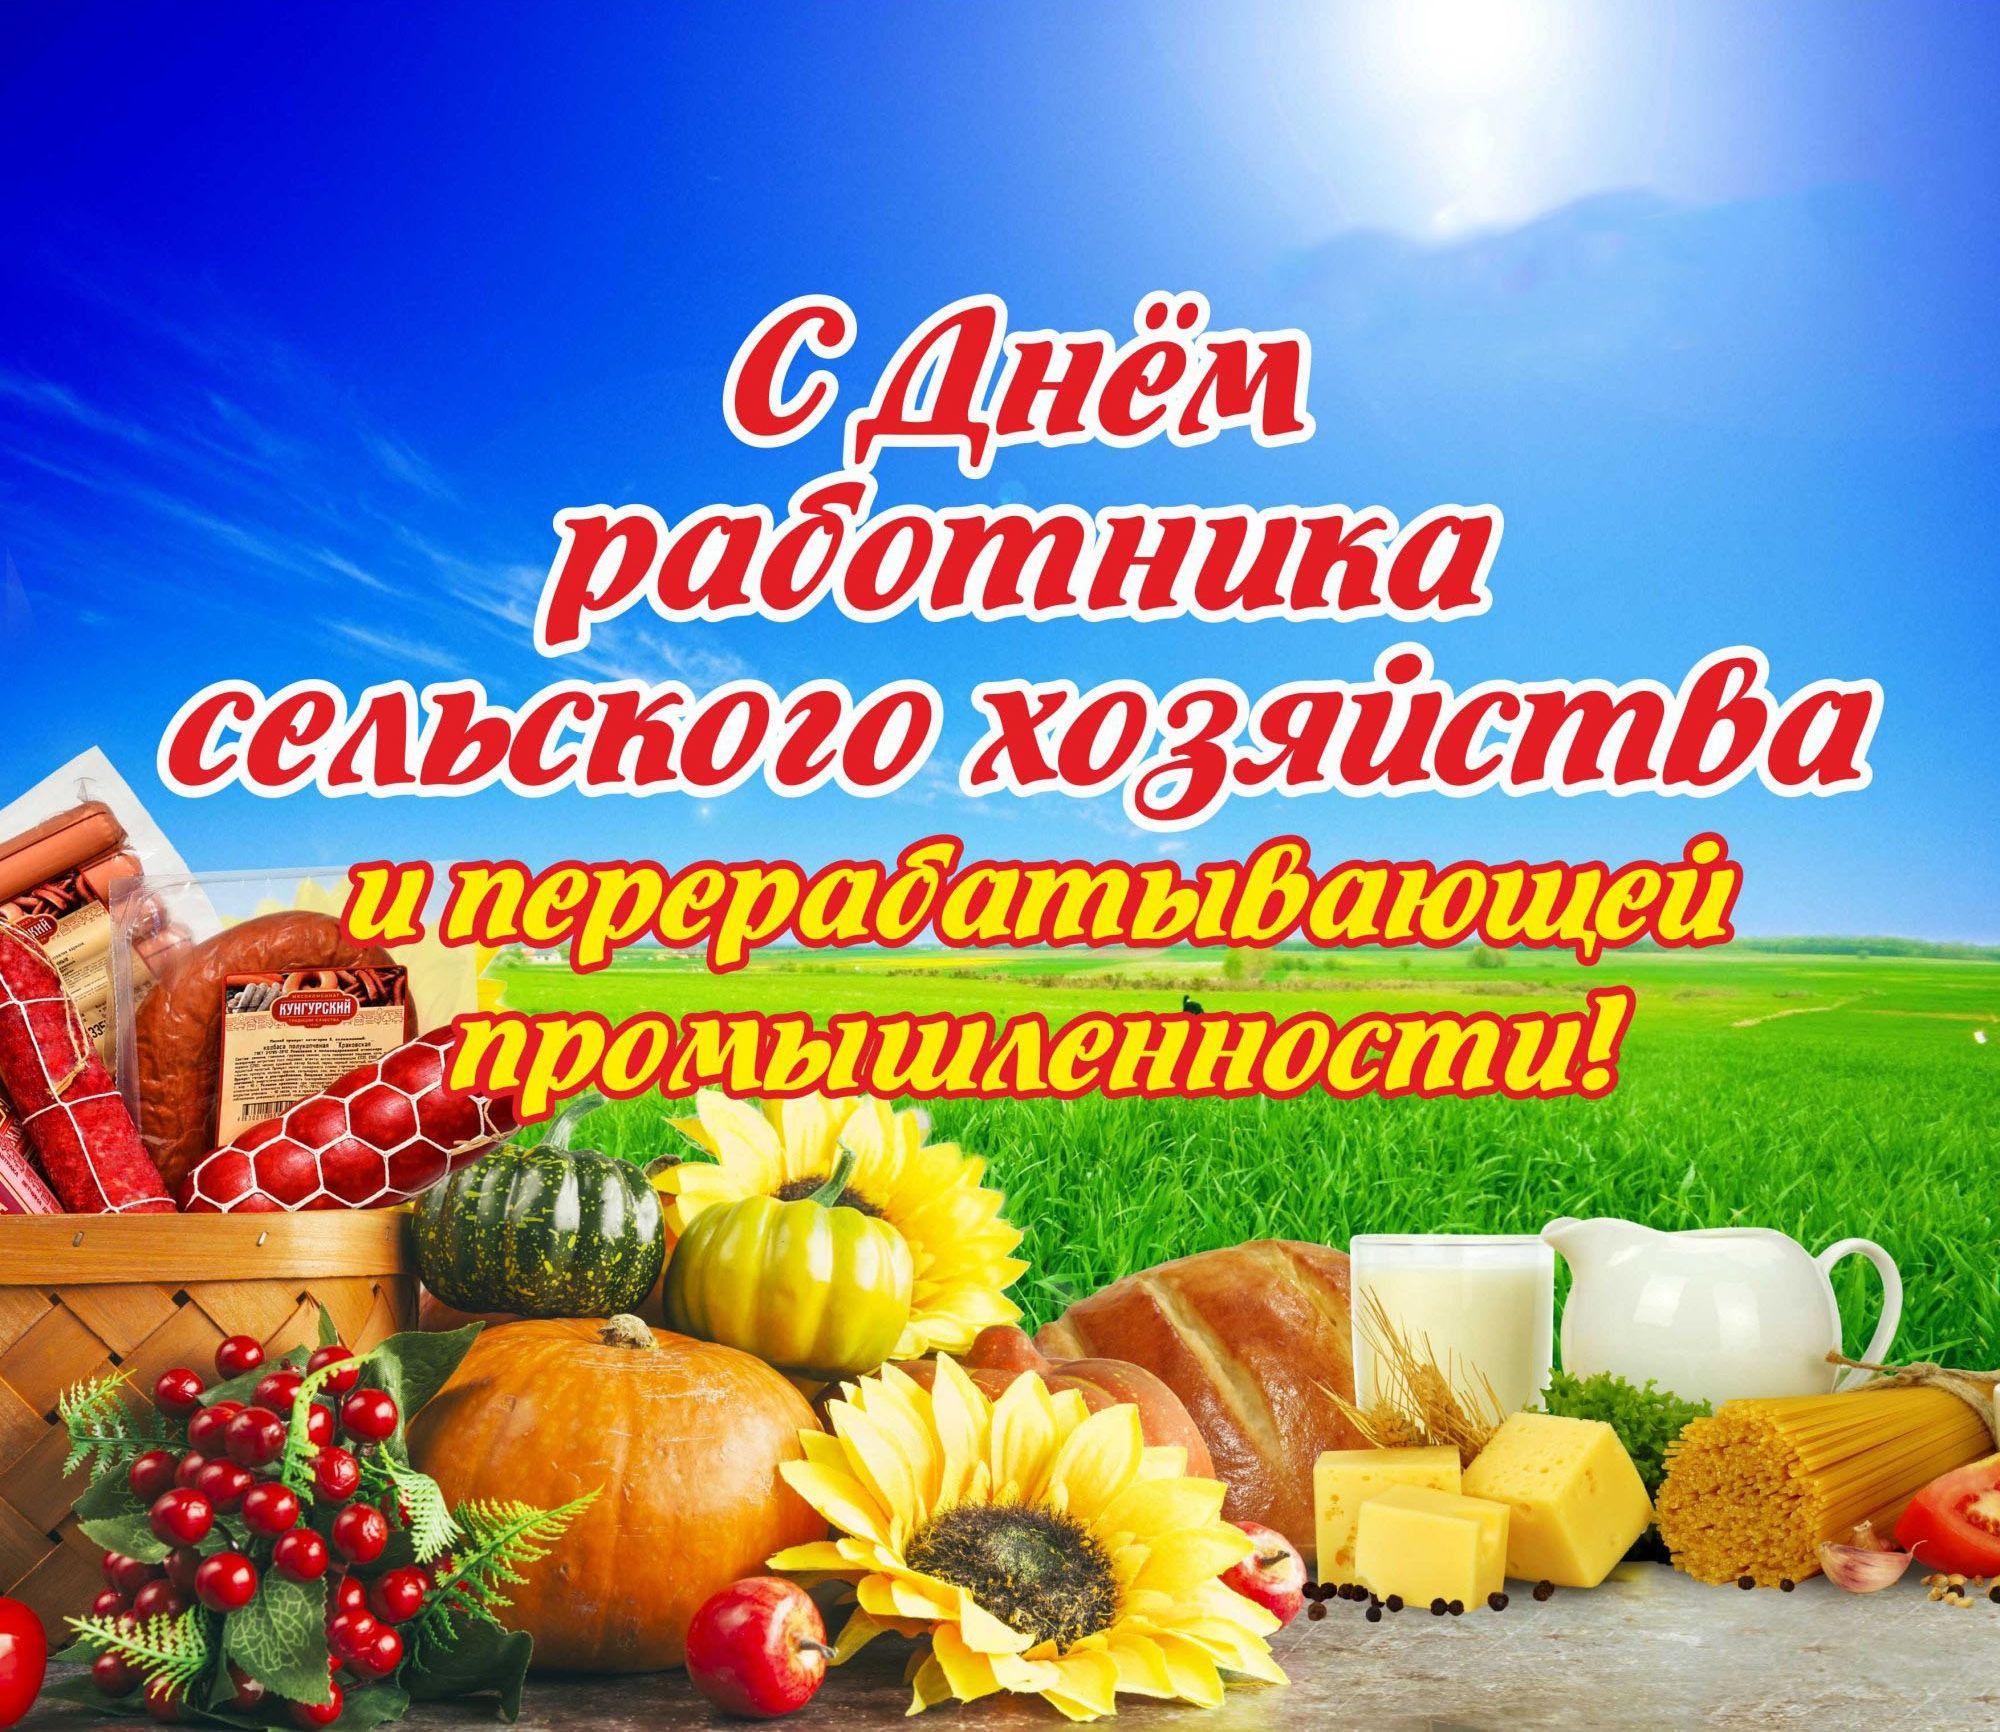 8 октября - День работника сельского хозяйства и перерабатывающей промышленности!.